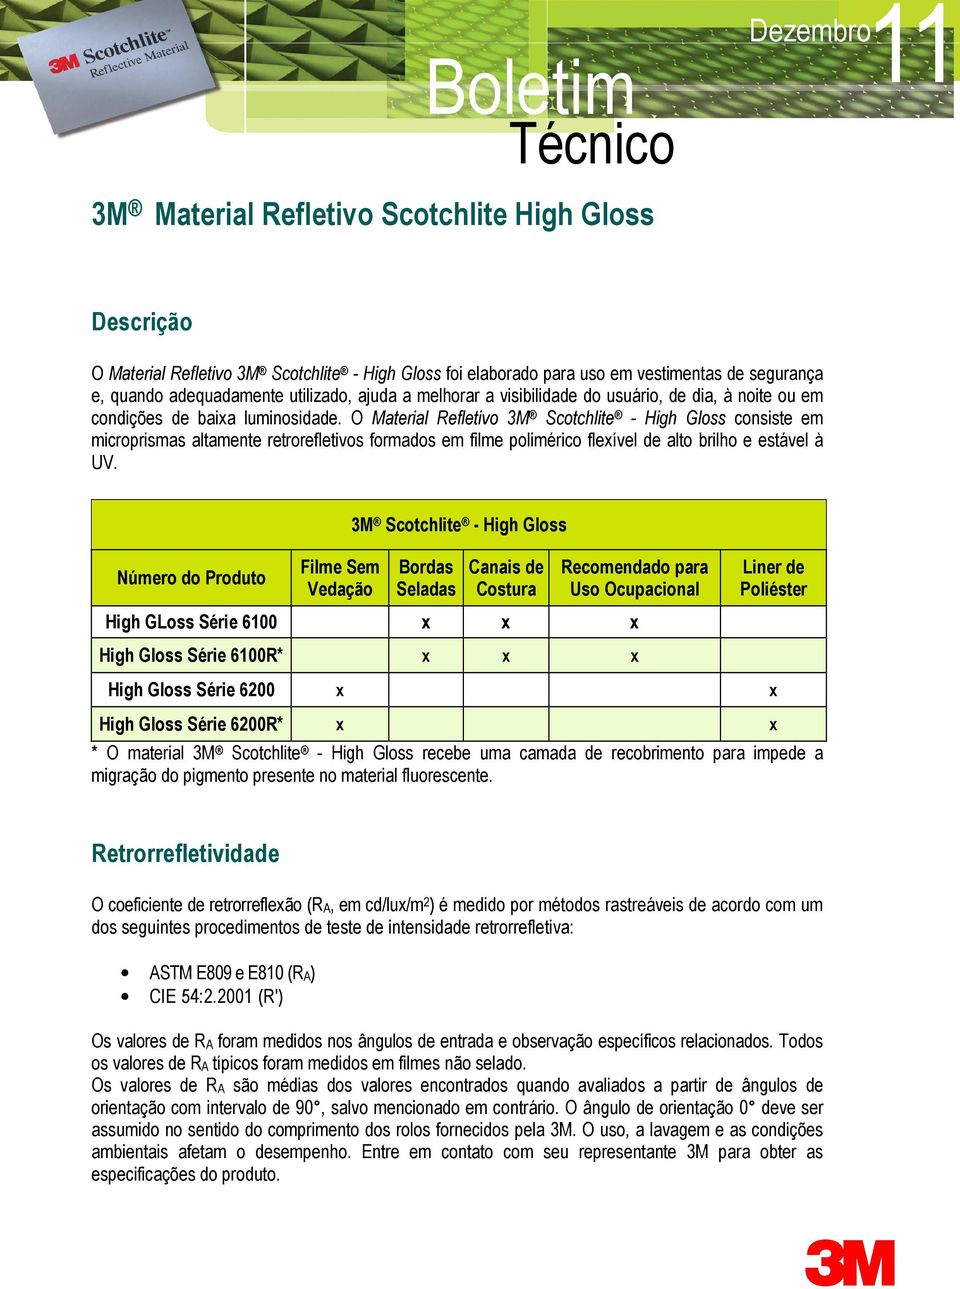 O Material Refletivo 3M Scotchlite - High Gloss consiste em microprismas altamente retrorefletivos formados em filme polimérico flexível de alto brilho e estável à UV.